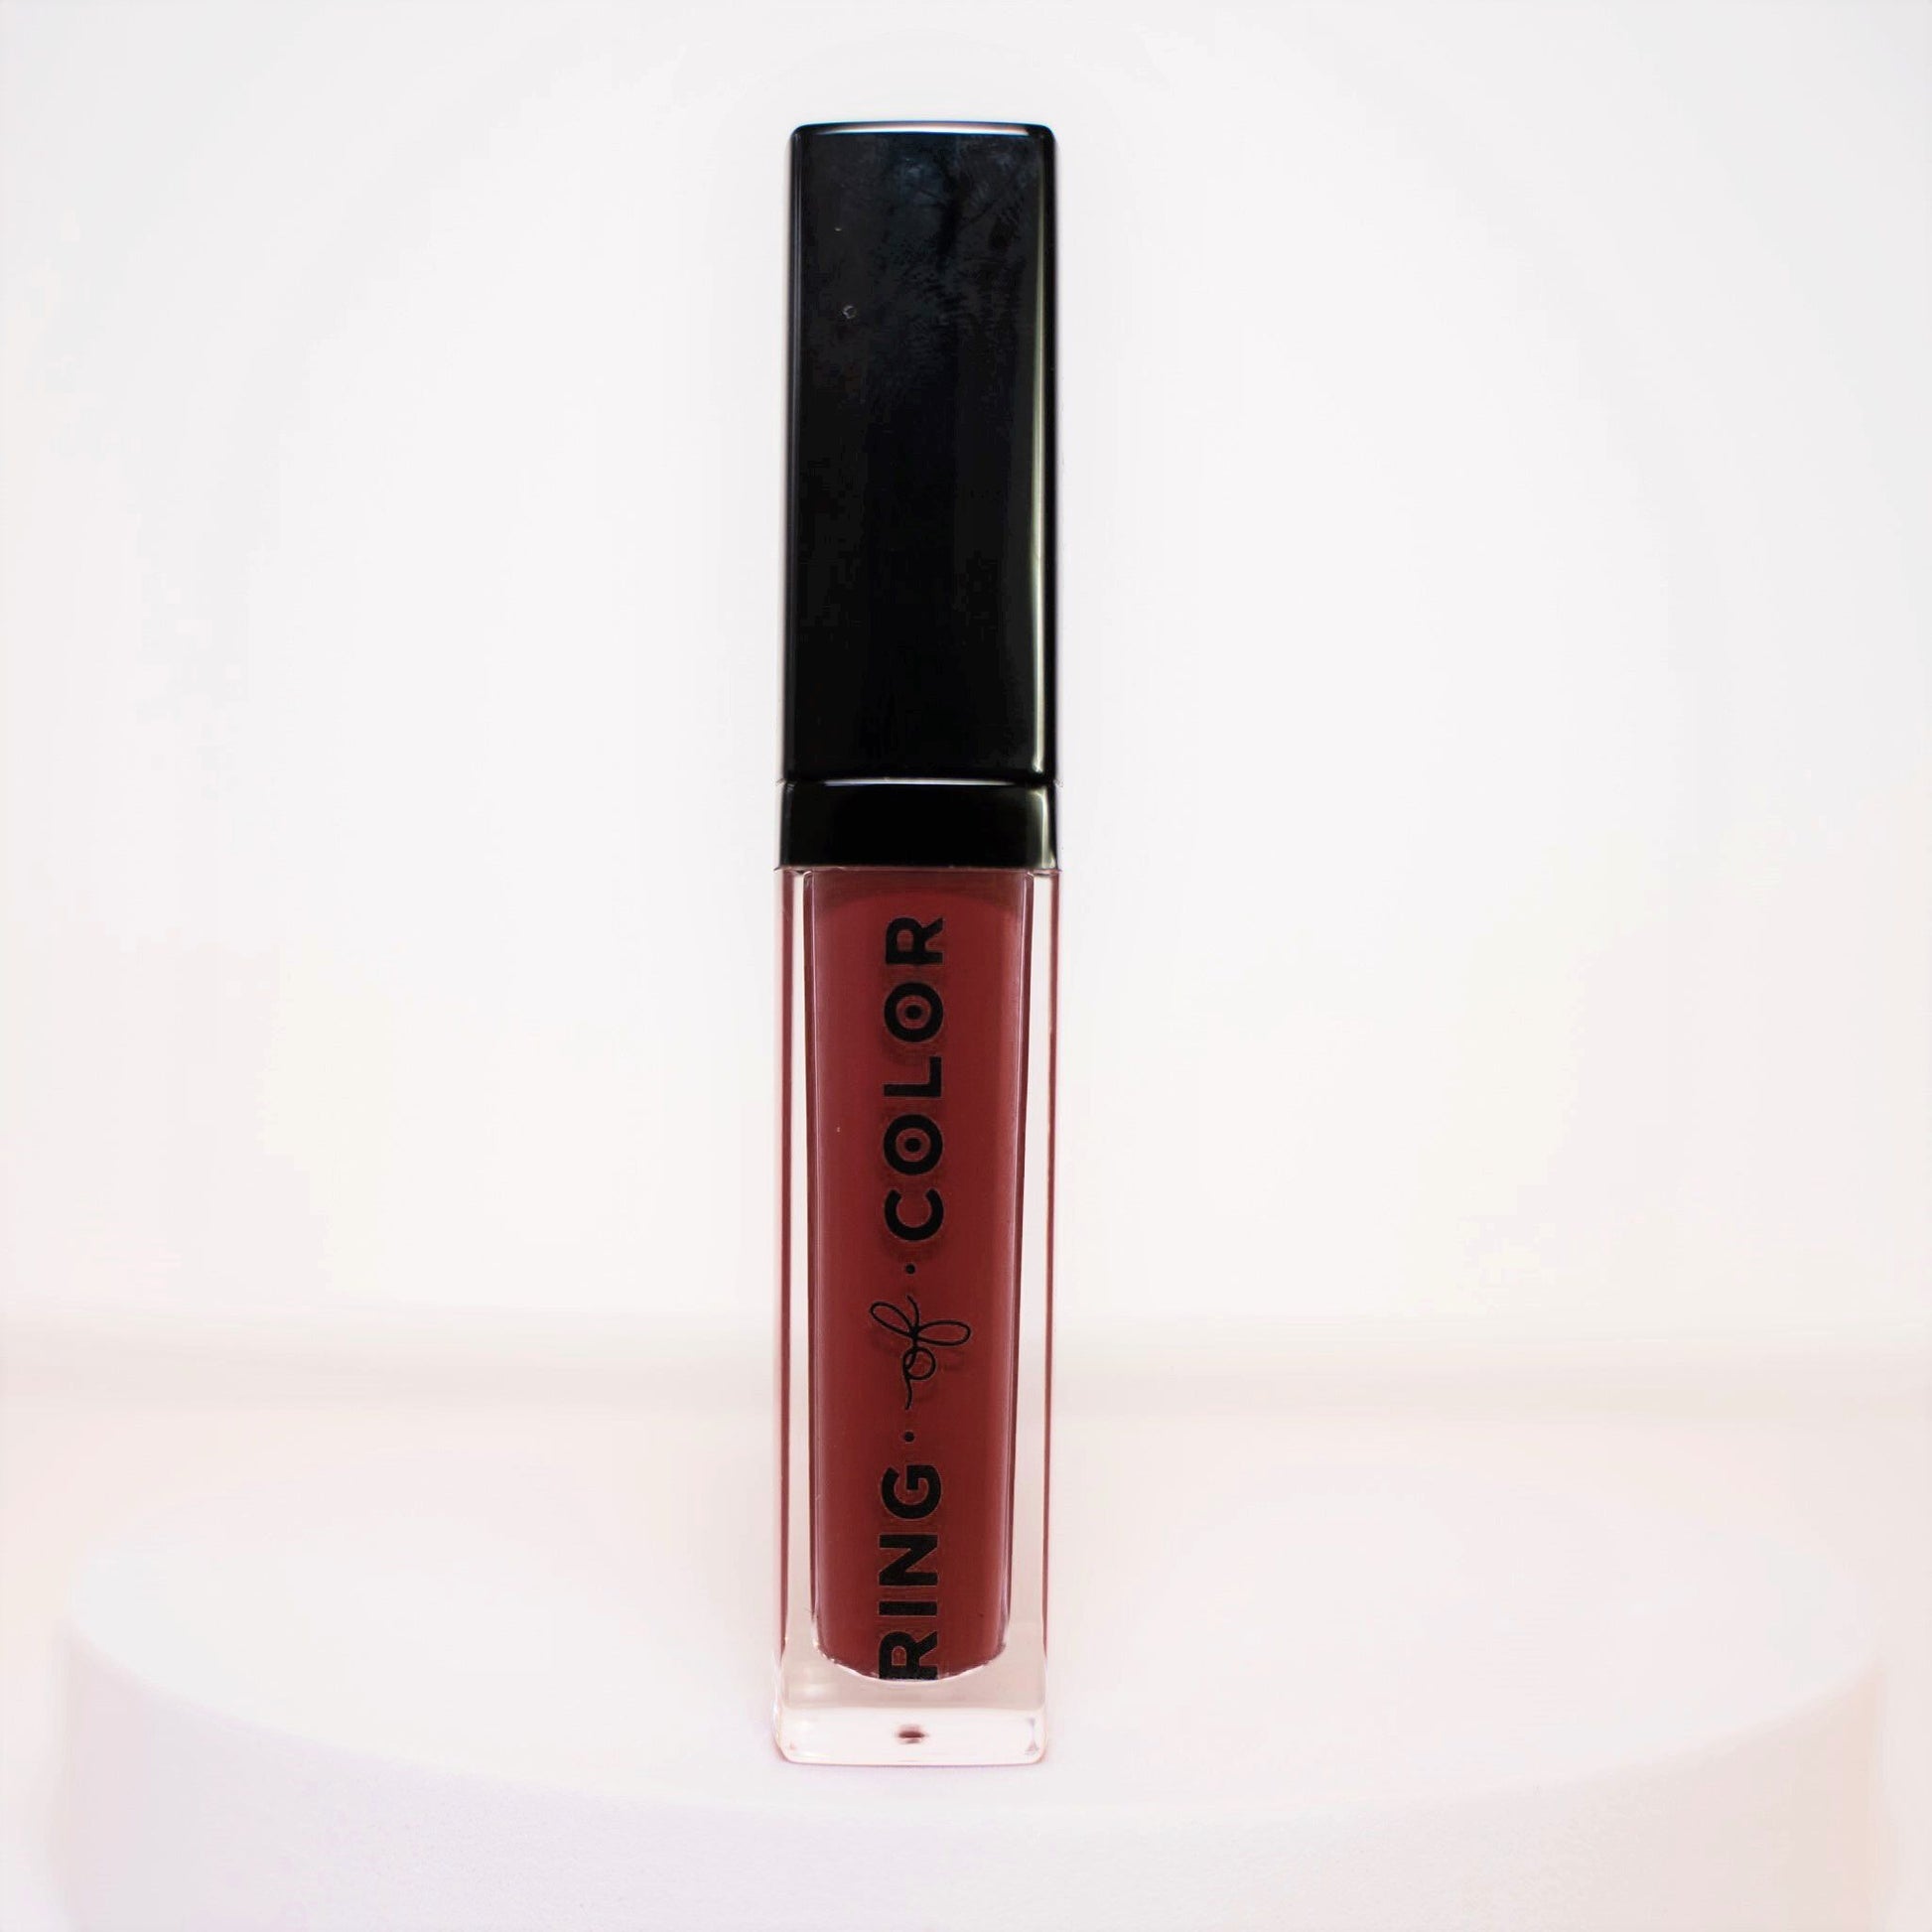 velvet matte liquid lipstick bottle with deep cranberry shade